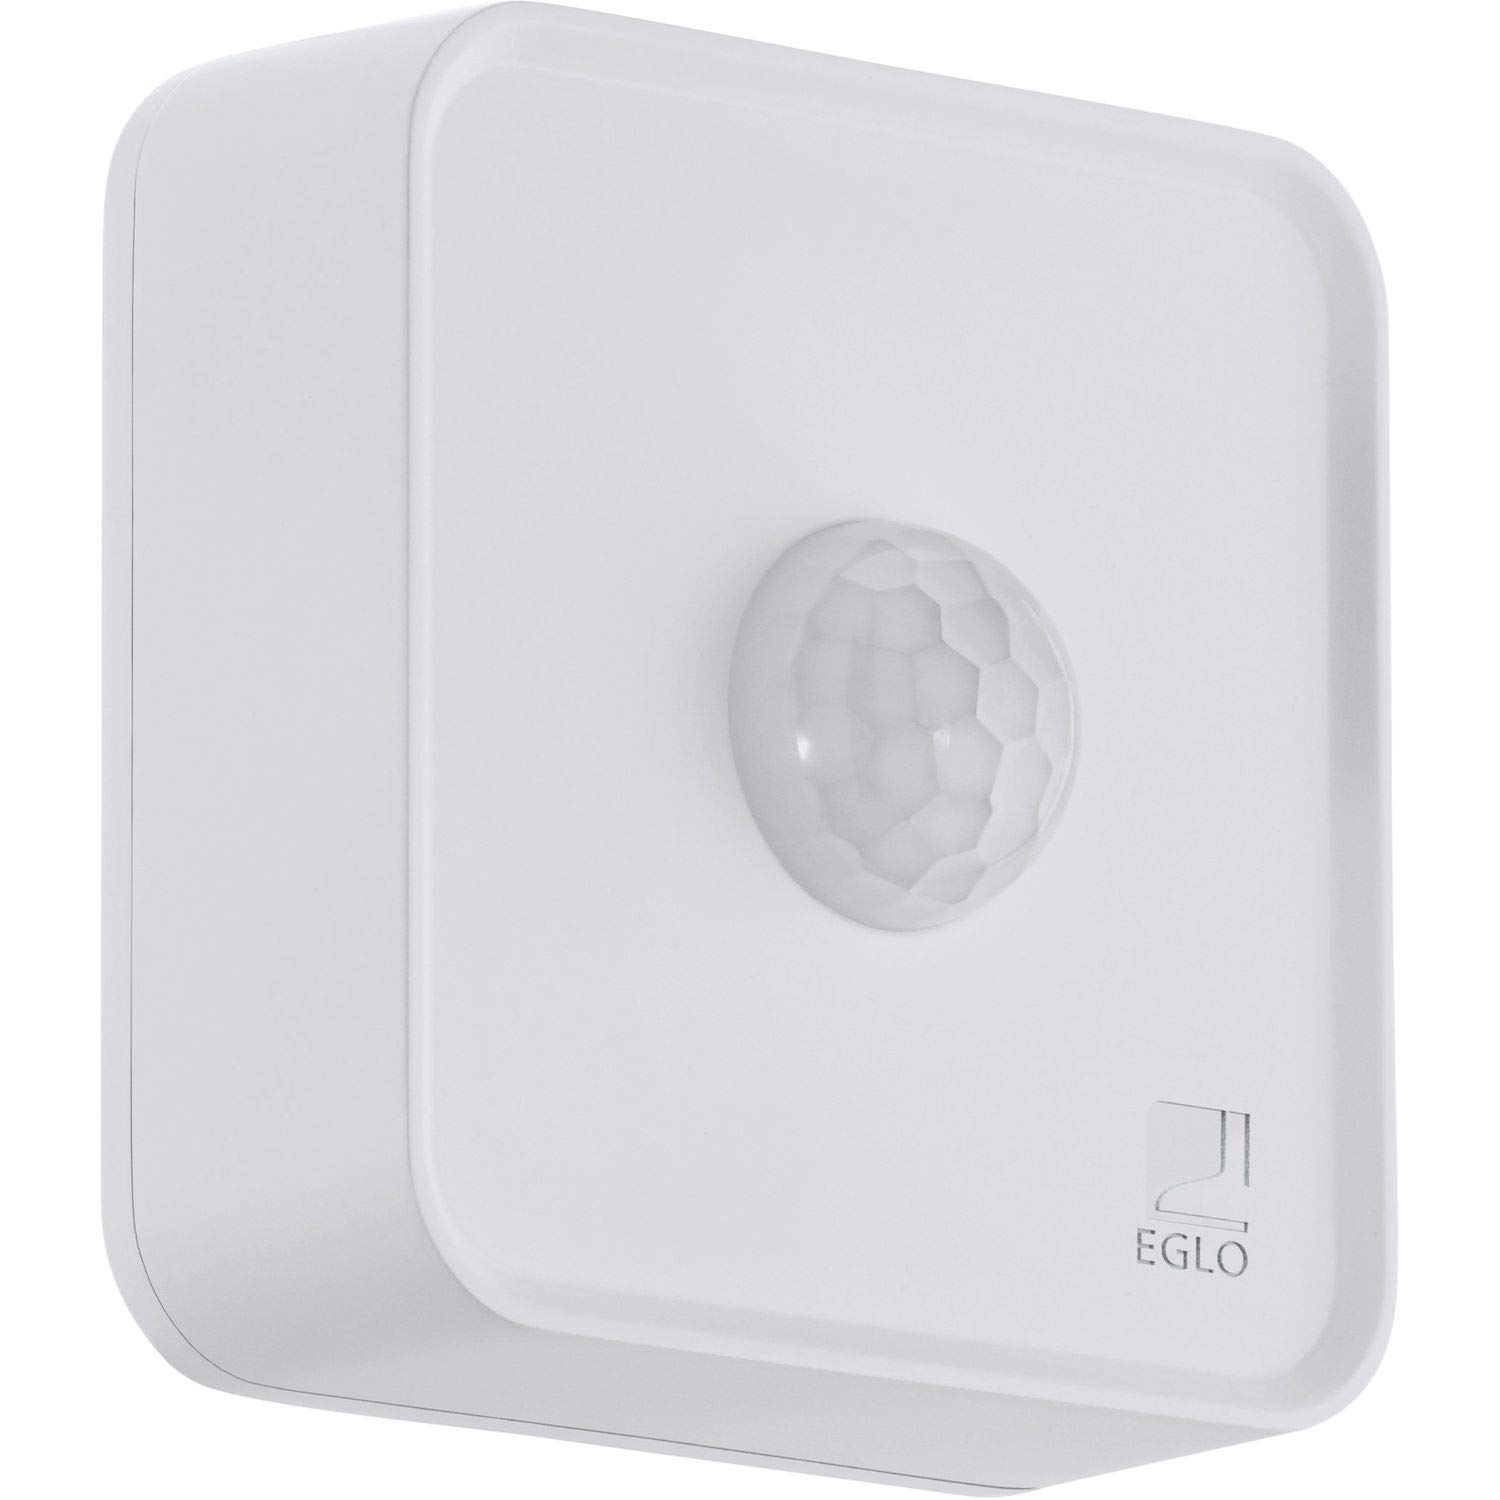 EGLO connect Sensor, Smart Home Bewegungsmelder, batteriebetrieben, Bluetooth Zubehör für EGLO connect System, Material: Kunststoff, Farbe: Weiß, IP44